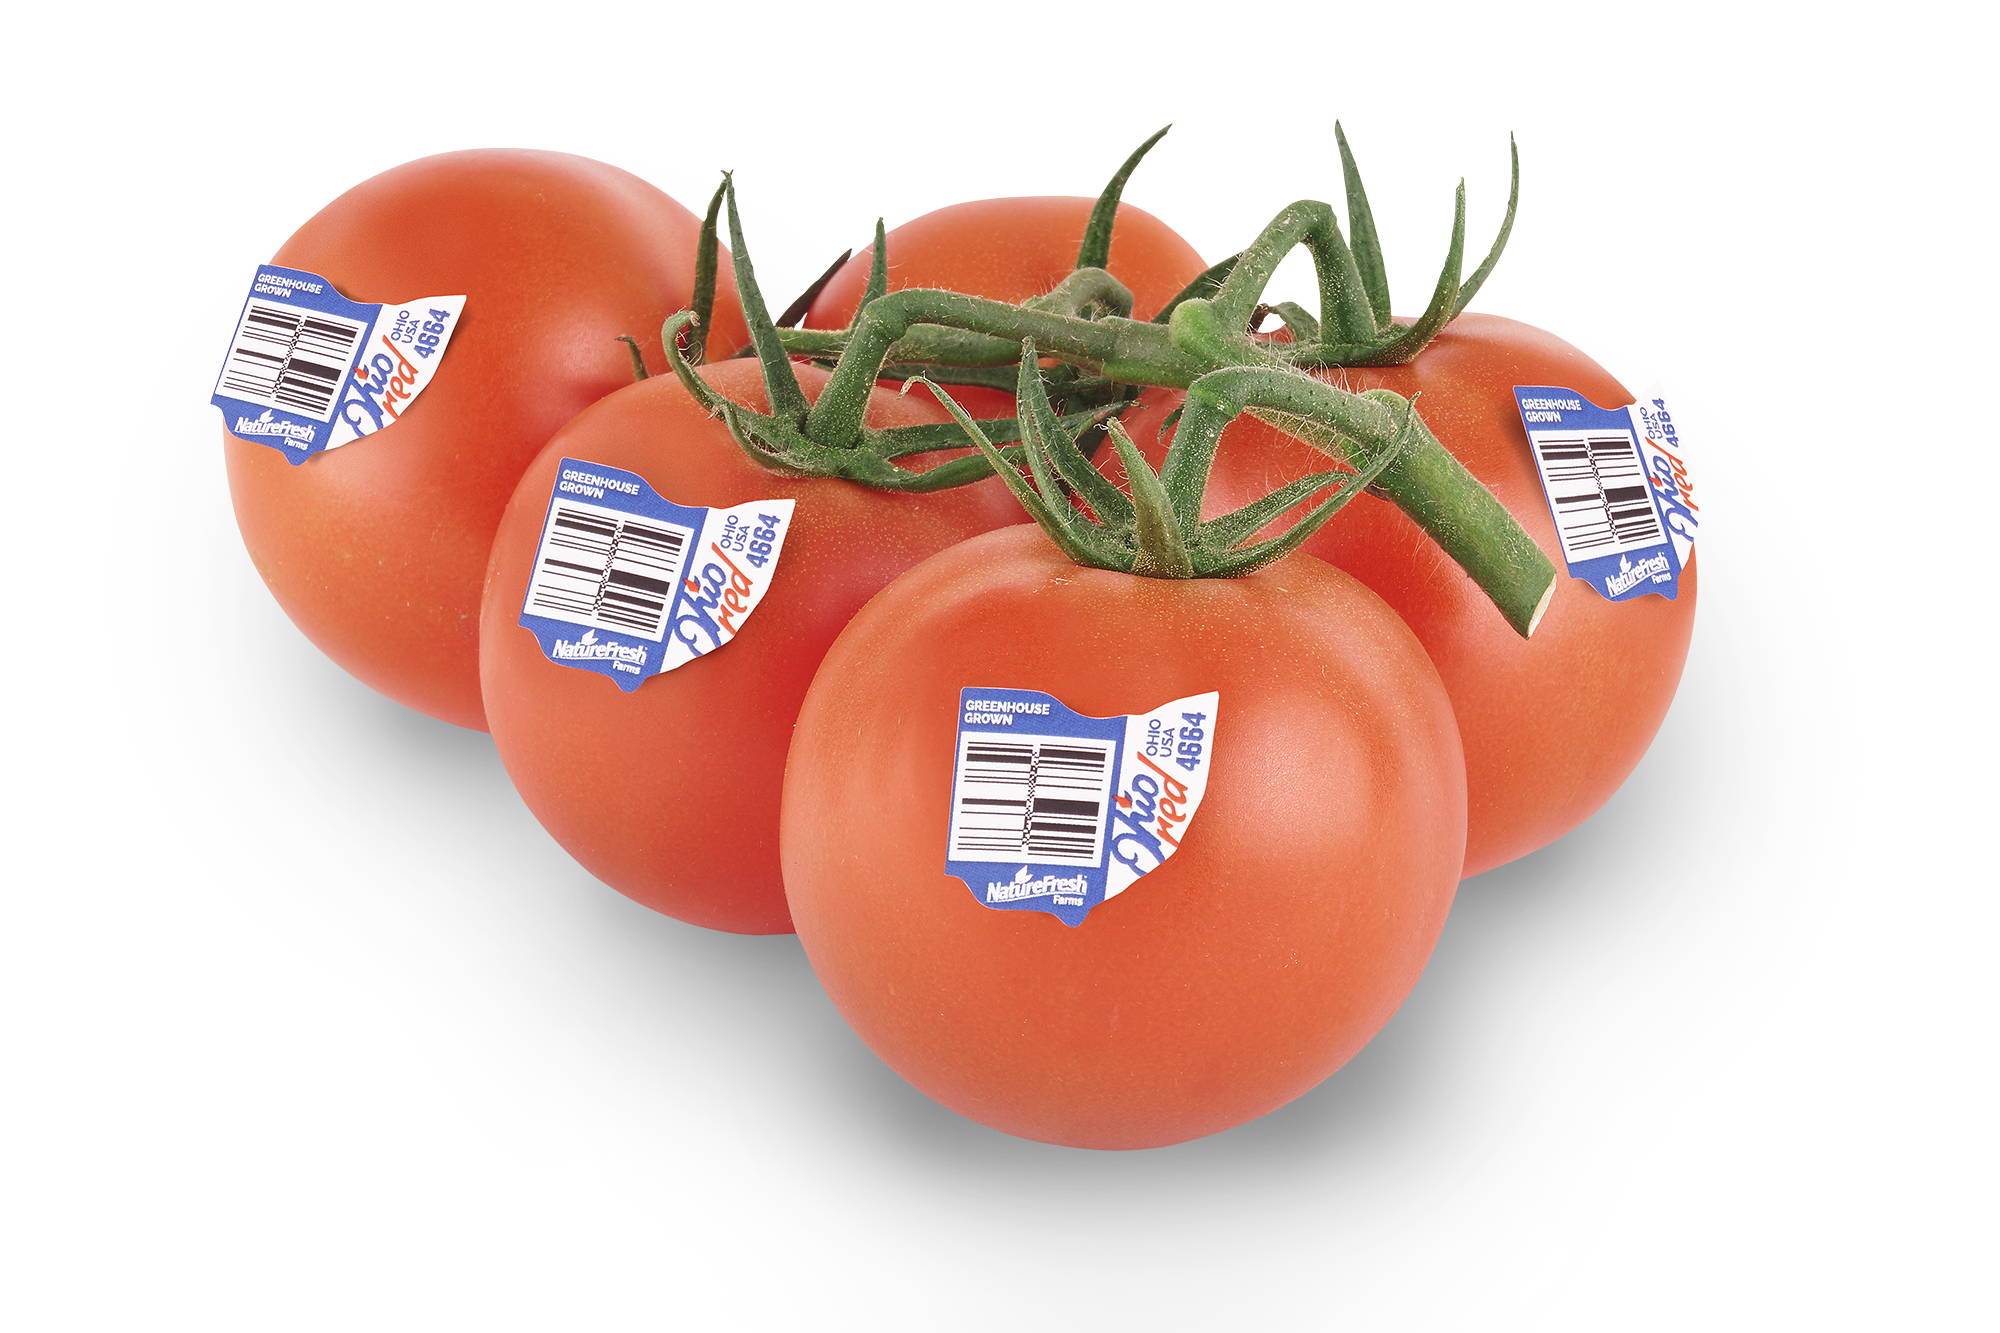 Ohio Red Tomatoes